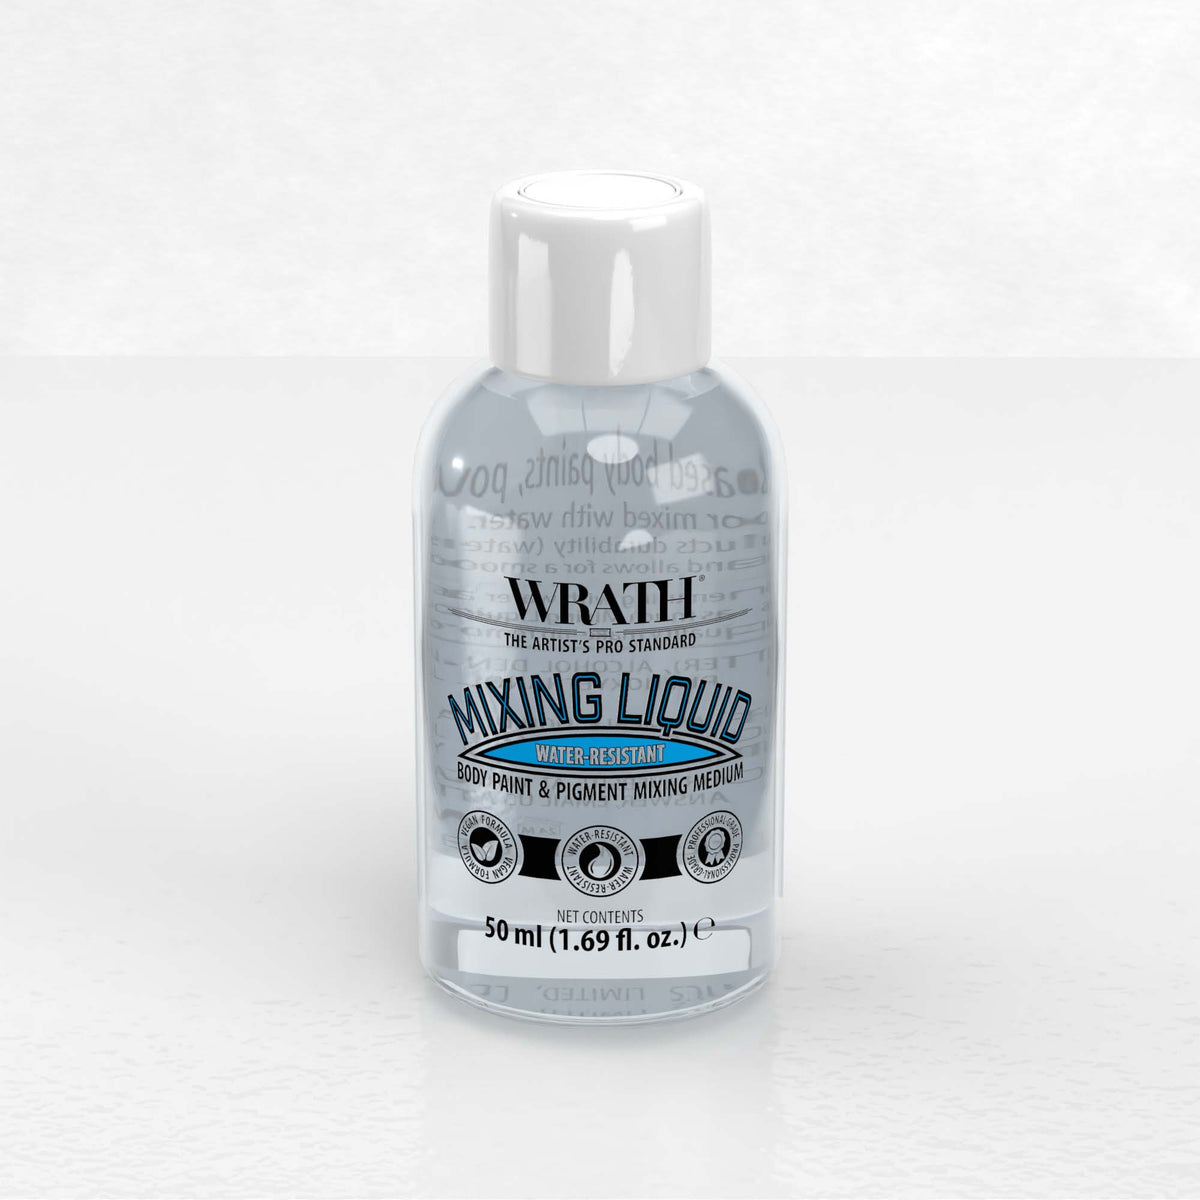 WRATH Mixing Liquid - Mischmedium für Körperfarbe und Pigmente